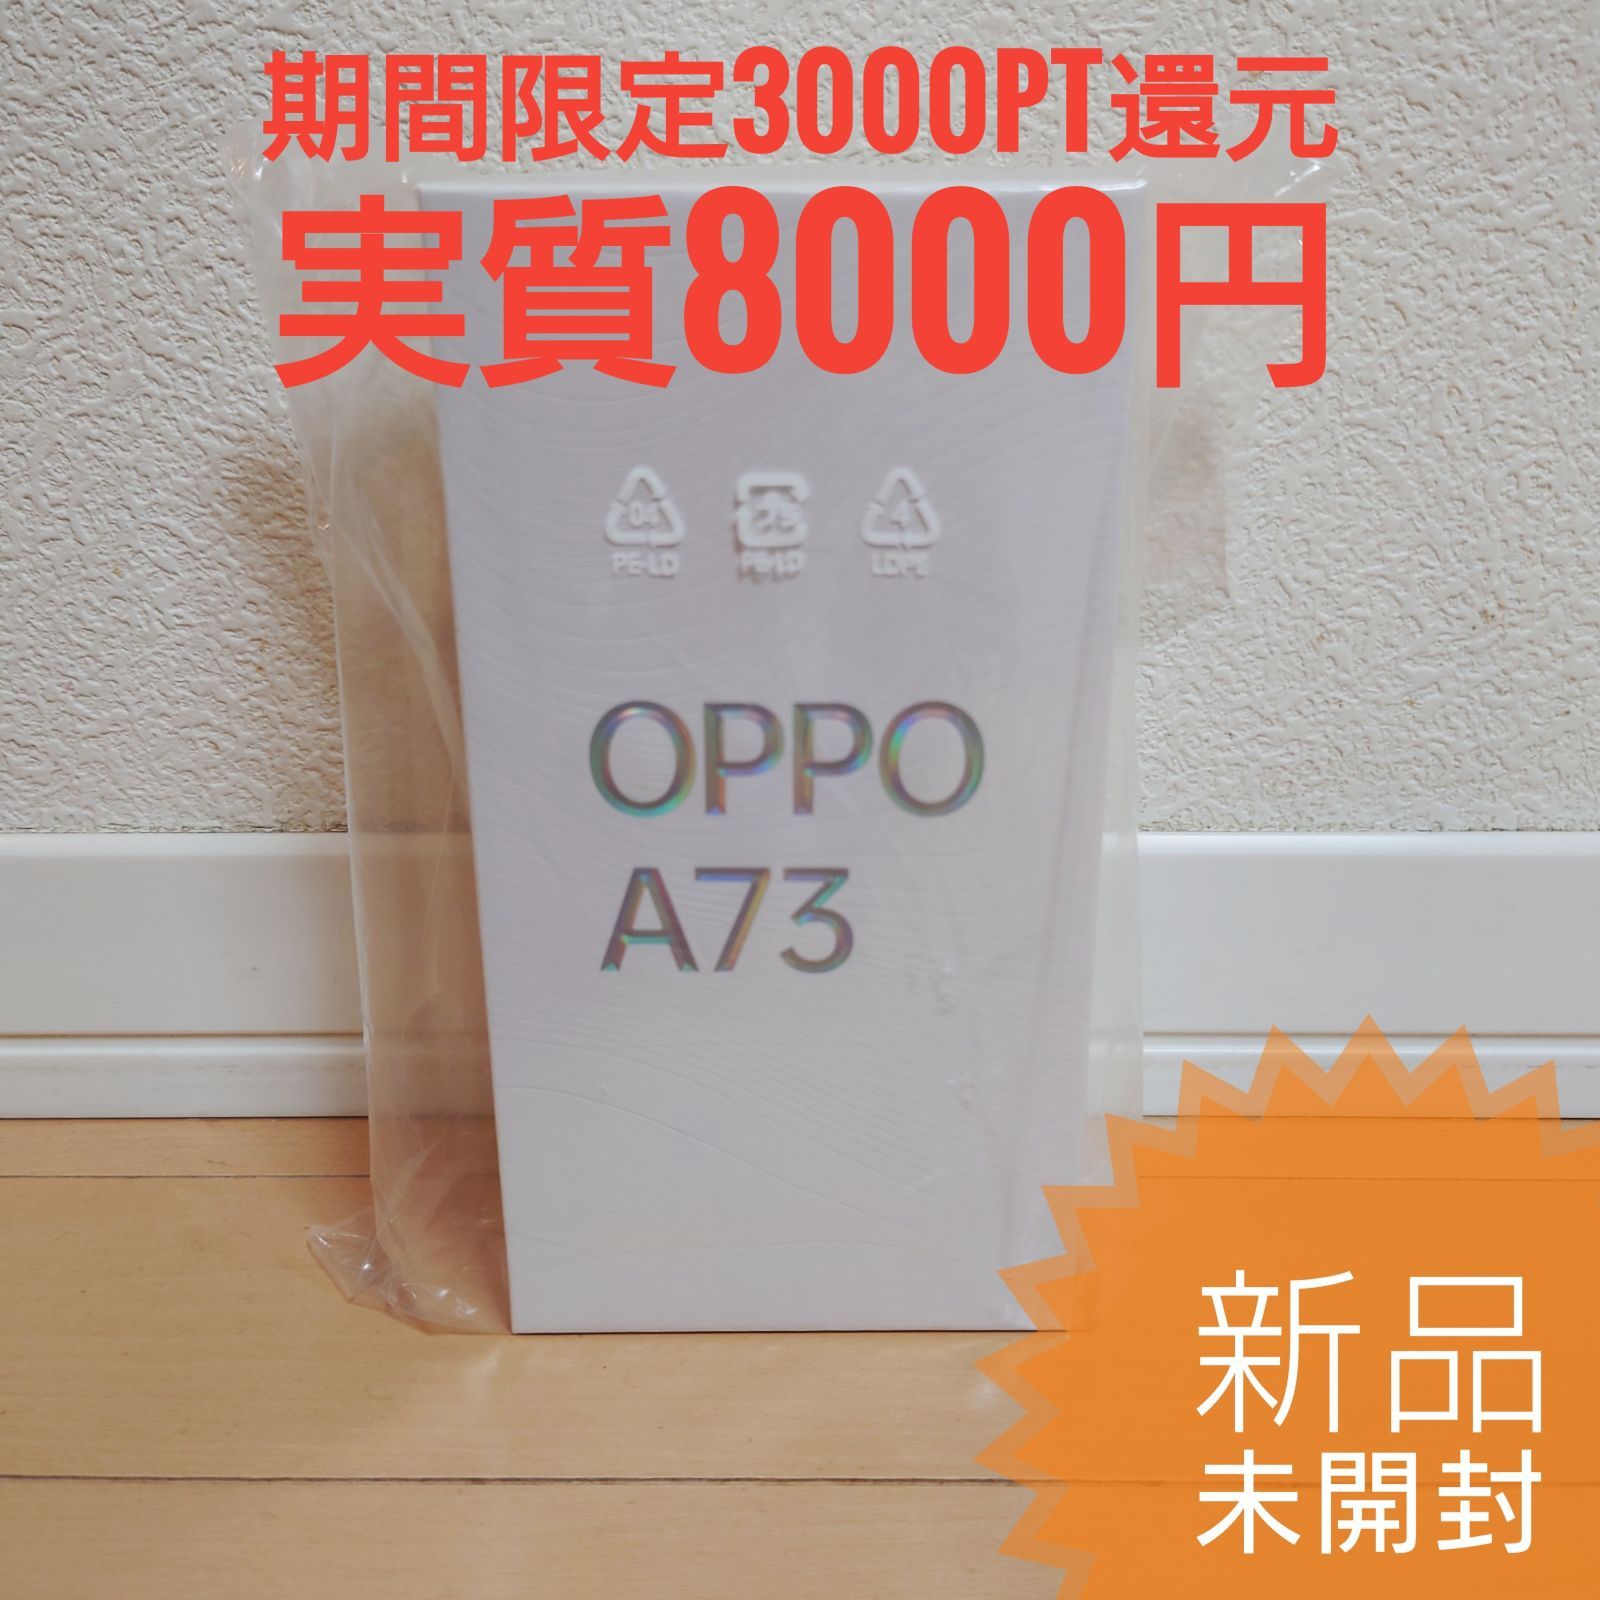 OPPO A73 ダイナミックオレンジ - メルカリ